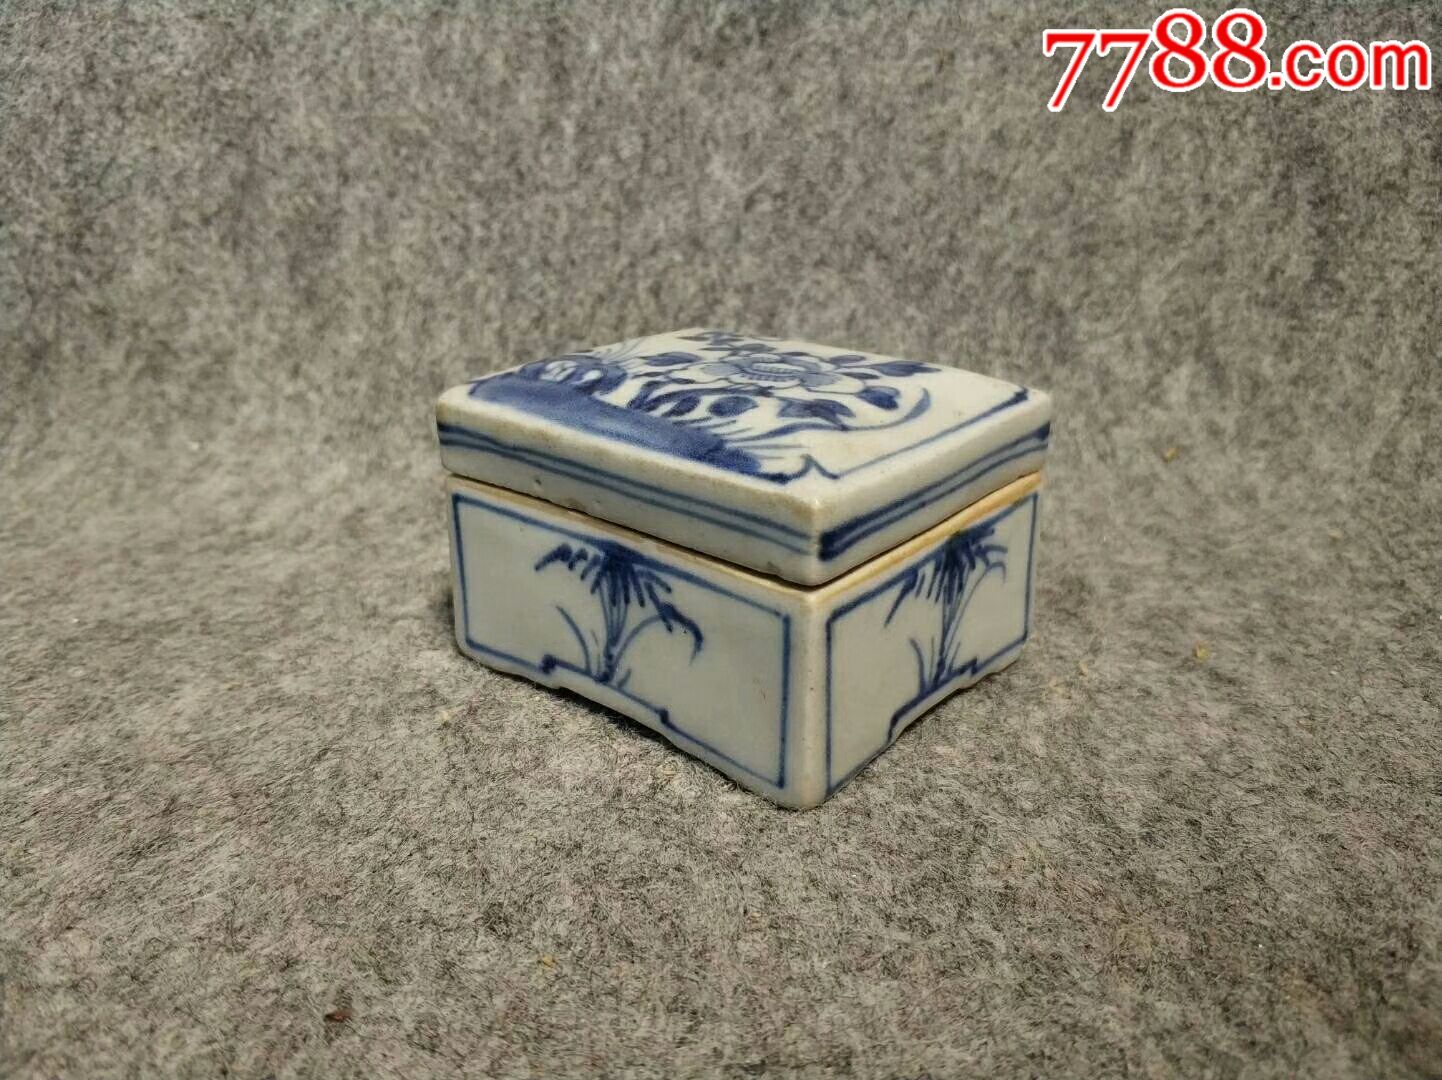 清代青花印泥盒,造型精致,釉色一流,长7厘米宽6厘米